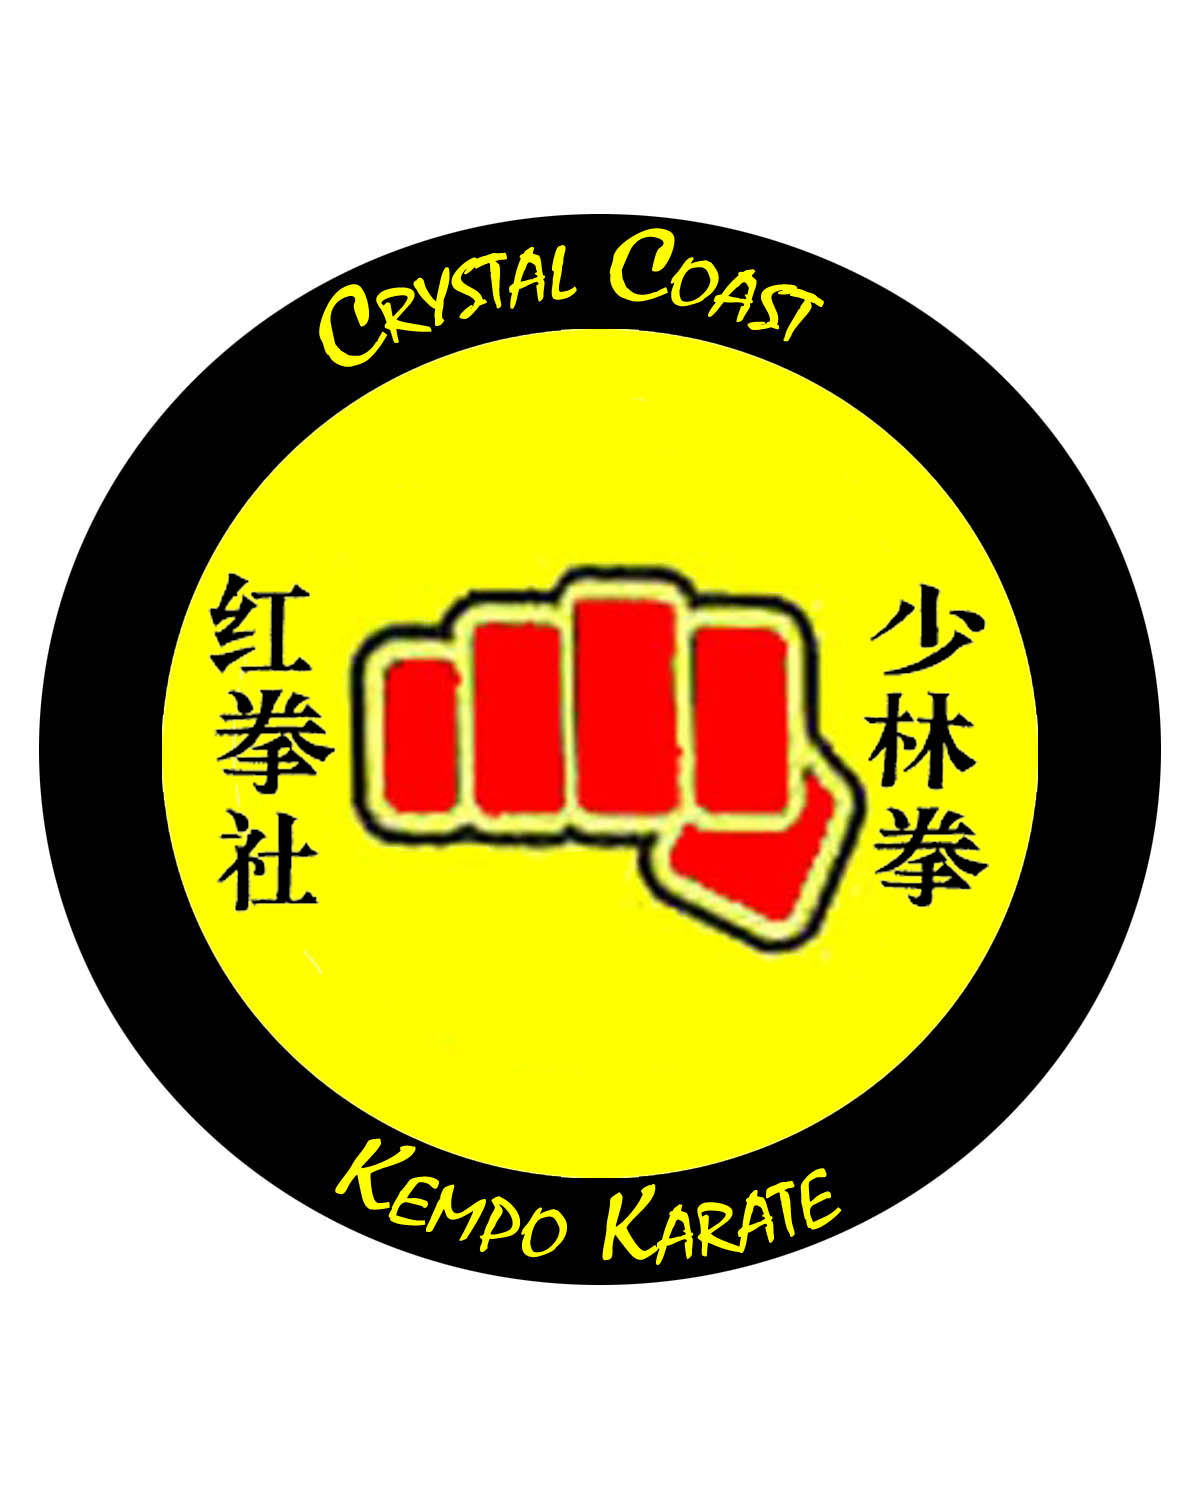 Web home of Crystal Coast Kempo Karate